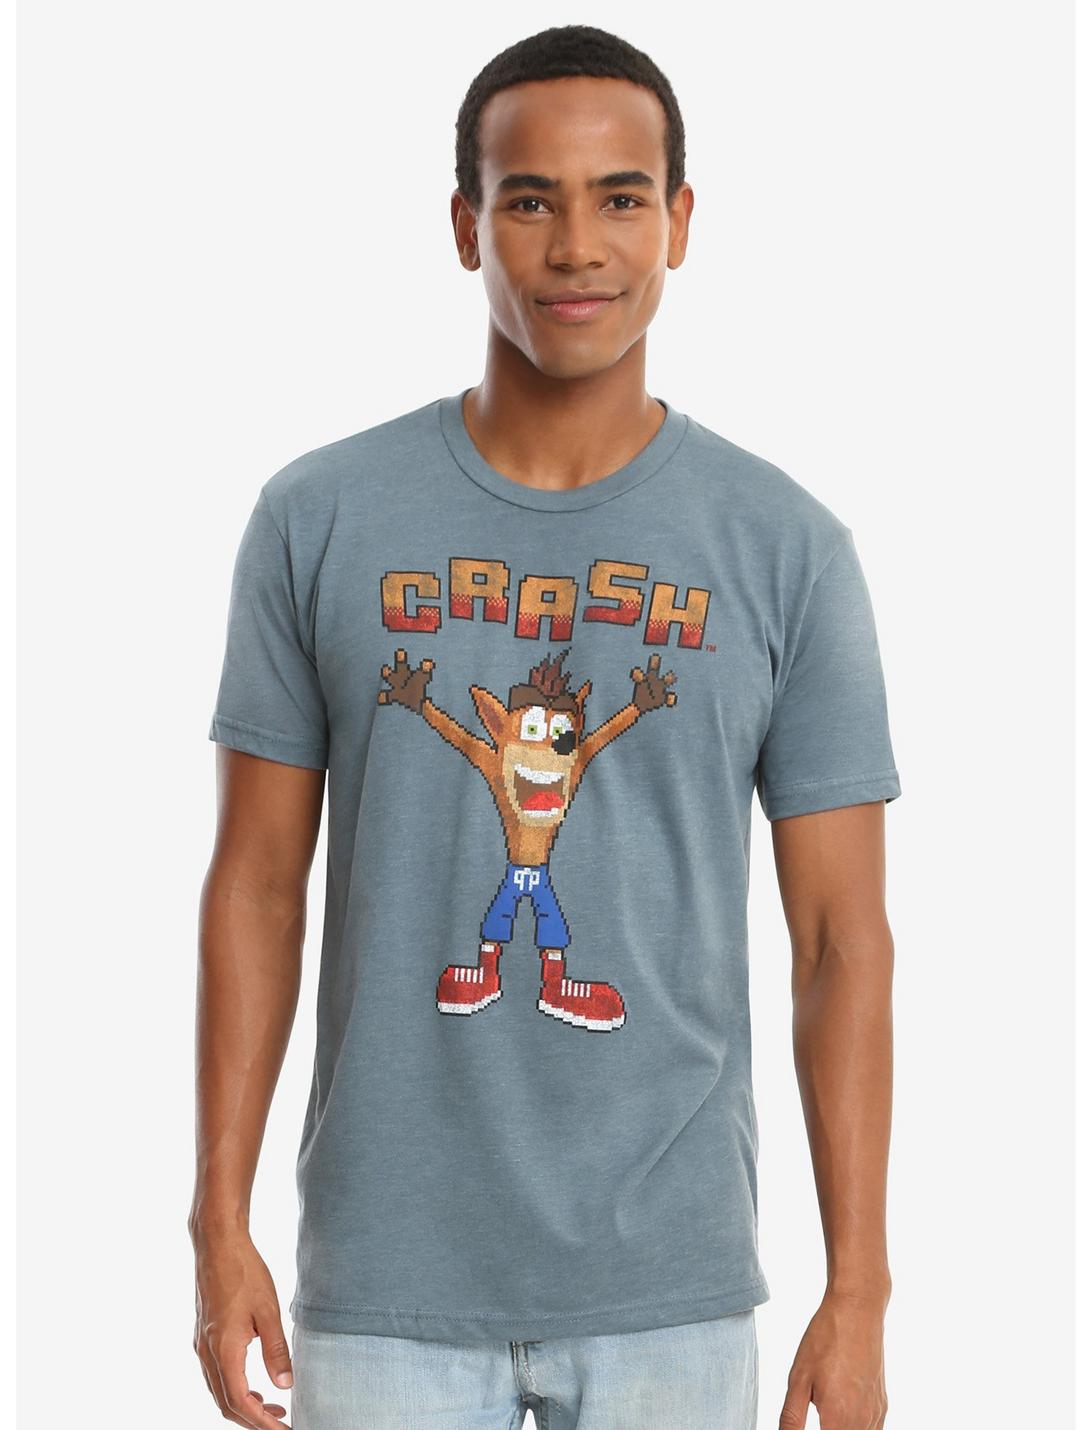 Crash Bandicoot Pixel T-Shirt - BoxLunch Exclusive, BLUE, hi-res